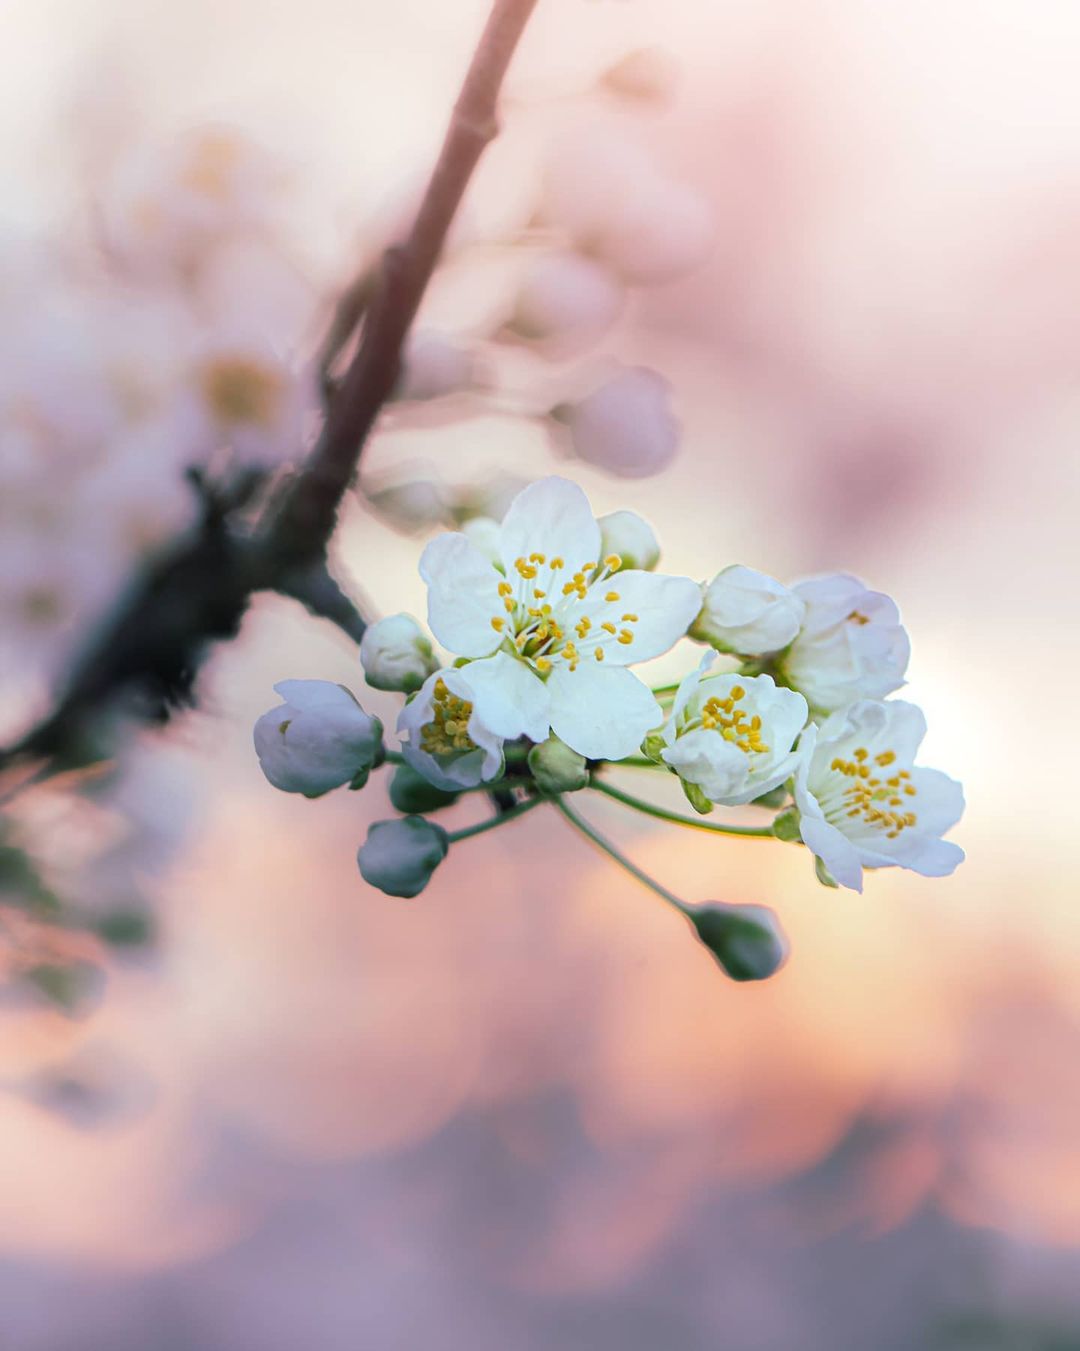 Красивые снимки цветов от Таши Тайдель